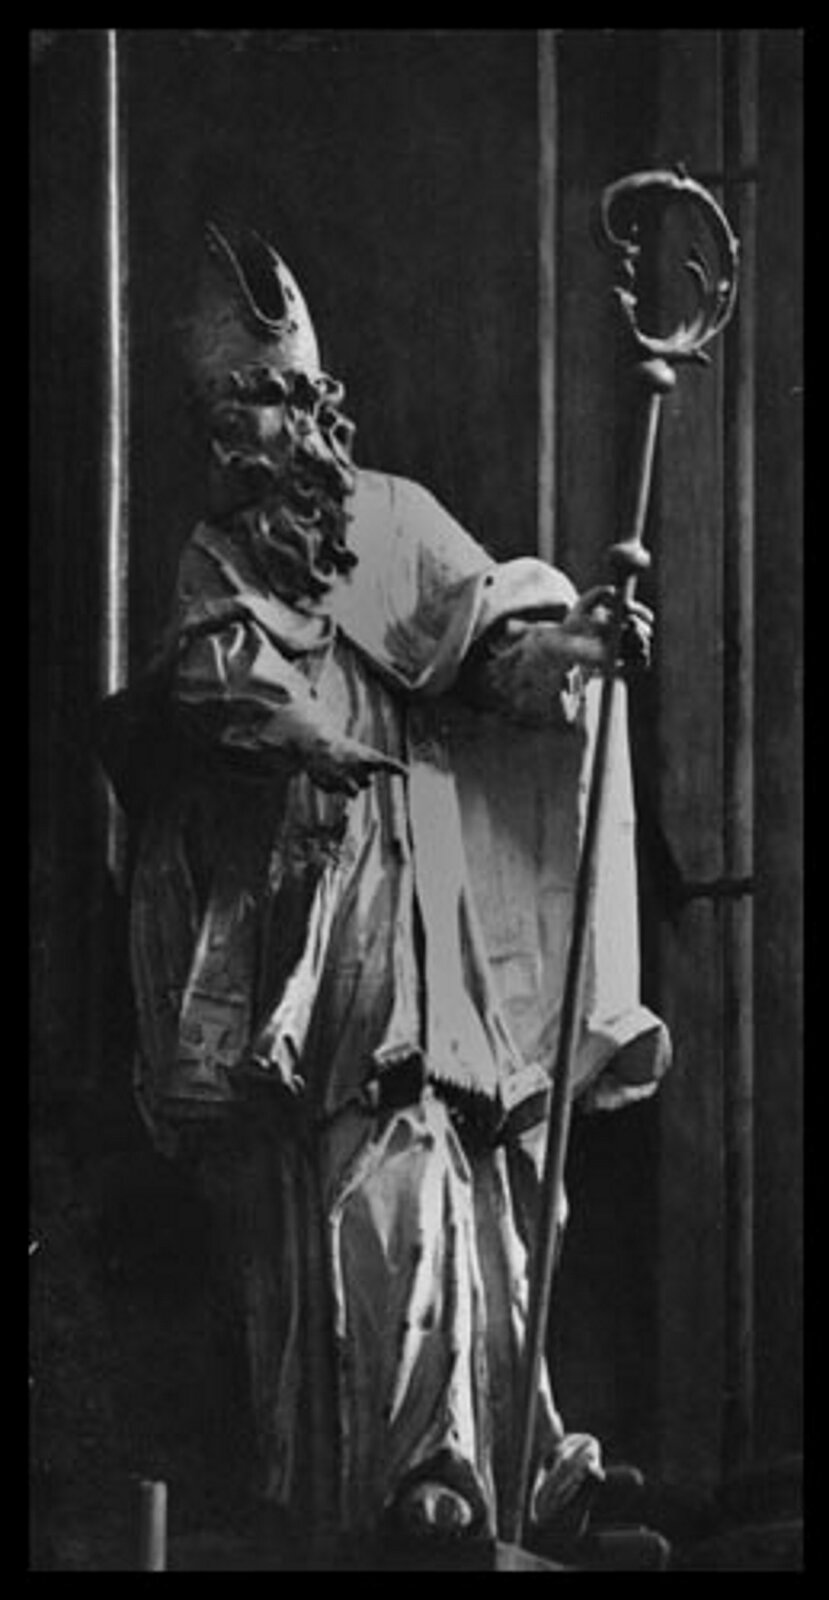 Ilustracja przedstawia rzeźbę świętego Atanazego na Ołtarzu Przemieniania Pańskiego we Lwowie. Rzeźba ukazuje postać starszego mężczyzny odzianego w długie szaty. Postać ma długie falowane włosy oraz bujny zarost. Na głowie założoną ma czapkę. W prawej dłoni trzyma laskę papieża, lewą zaś wskazuje przed siebie.